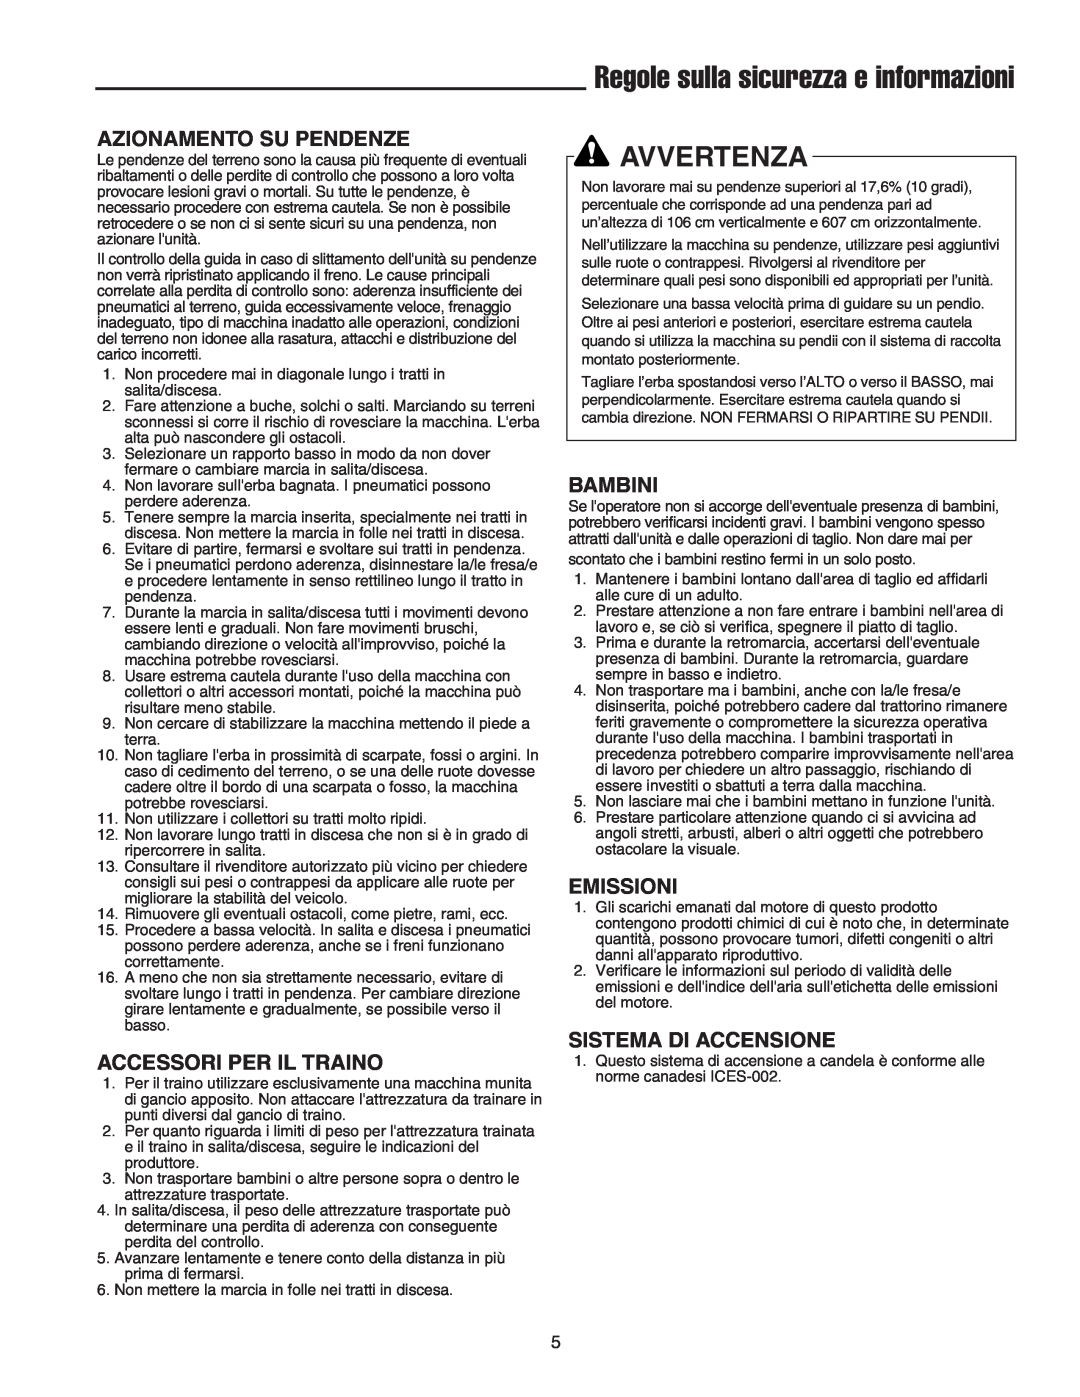 Briggs & Stratton Printer Regole sulla sicurezza e informazioni, Avvertenza, Azionamento Su Pendenze, Bambini, Emissioni 